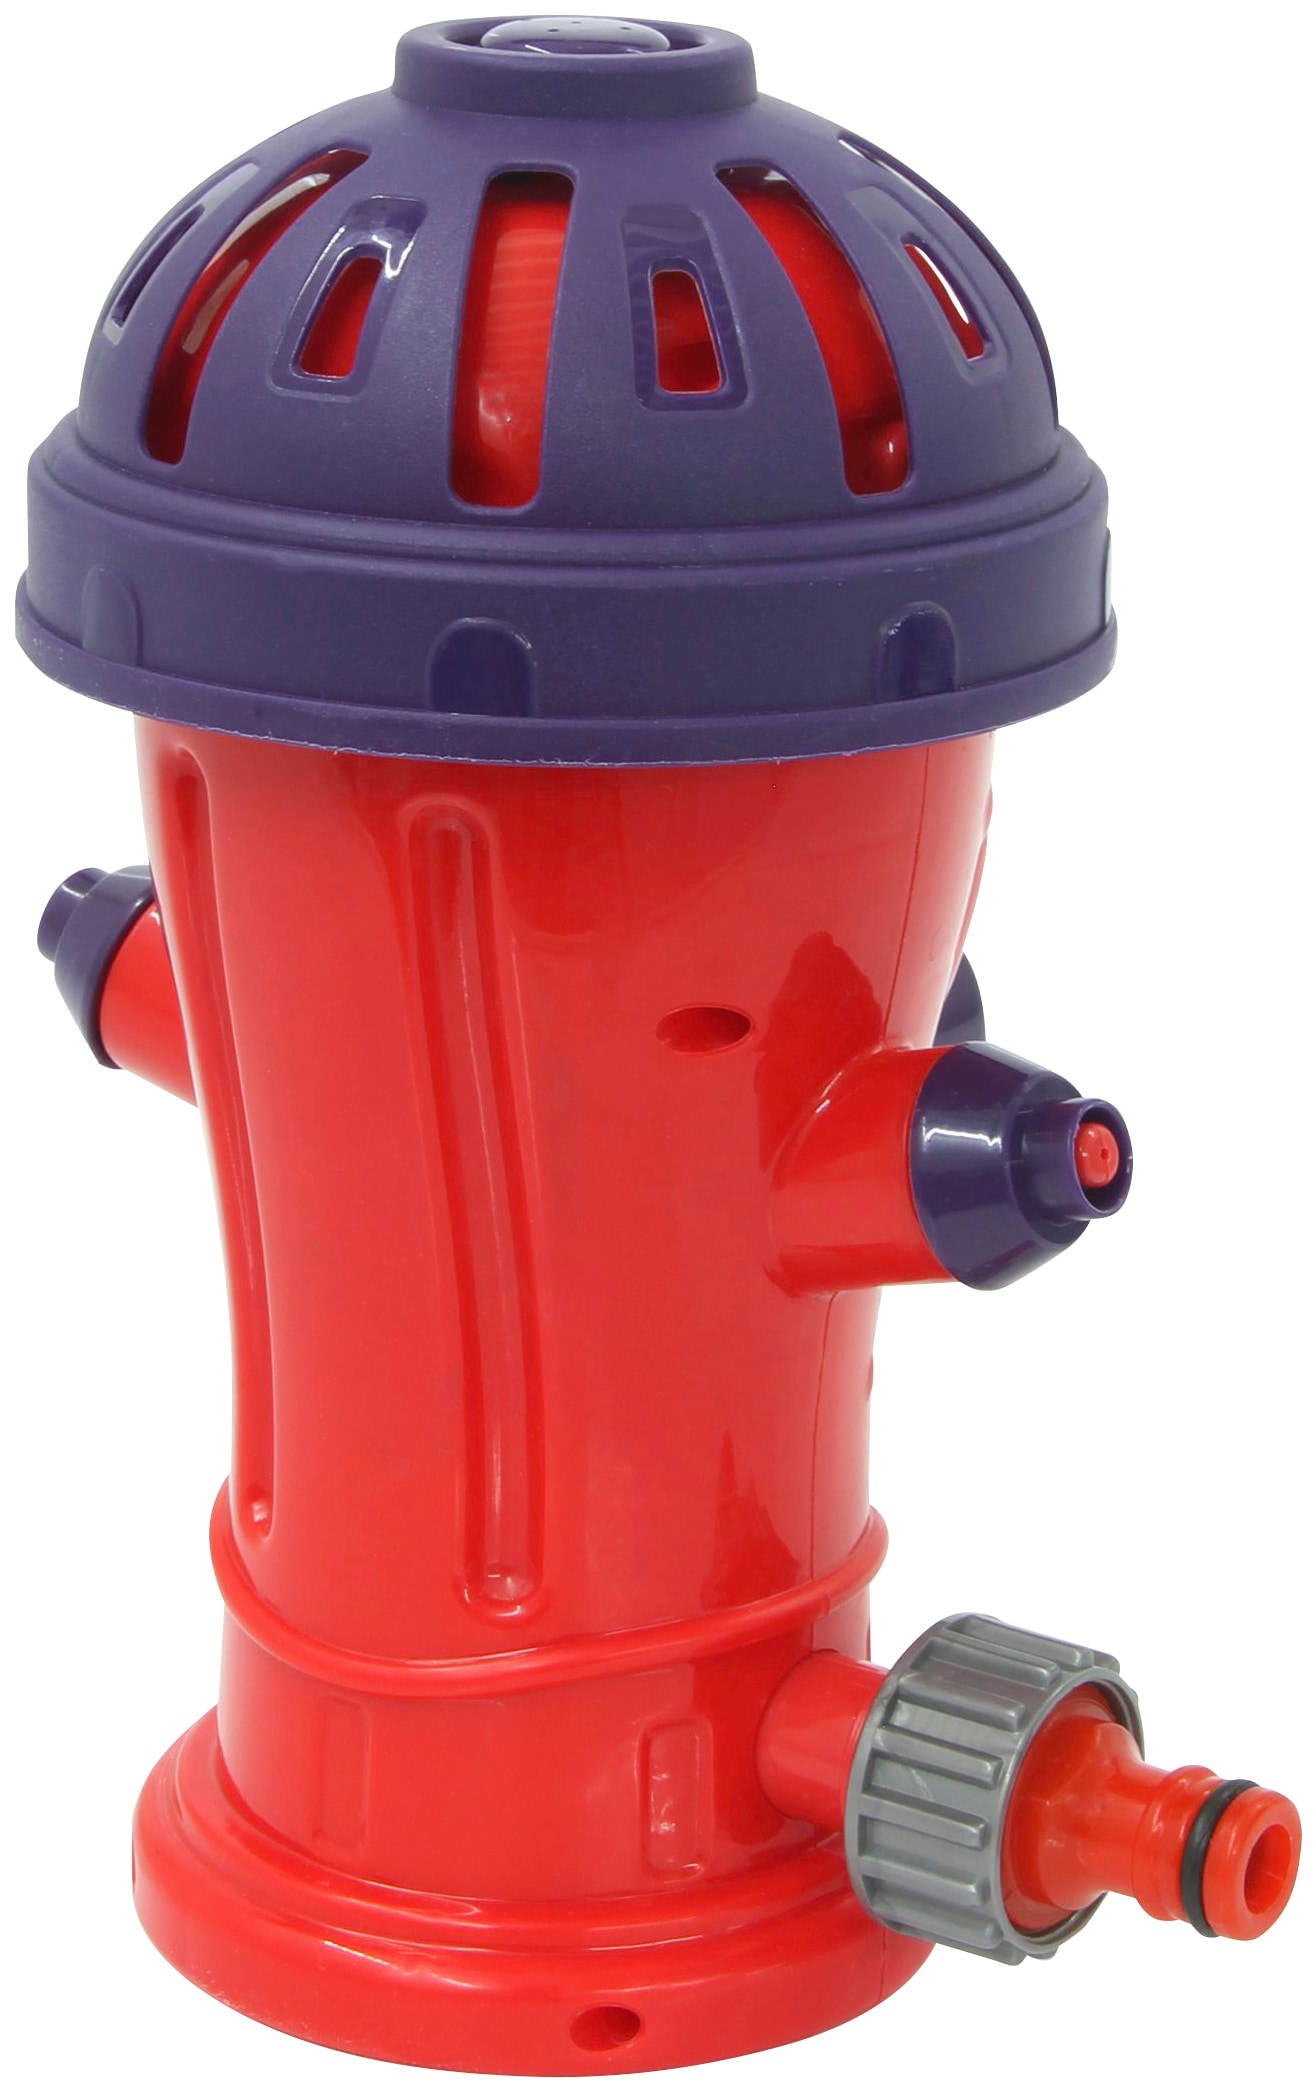 Jamara Spiel-Wassersprenkler »Mc Fizz Hydrant Happy«, für Kinder ab 3 Jahren, BxLxH: 9x16x21 cm